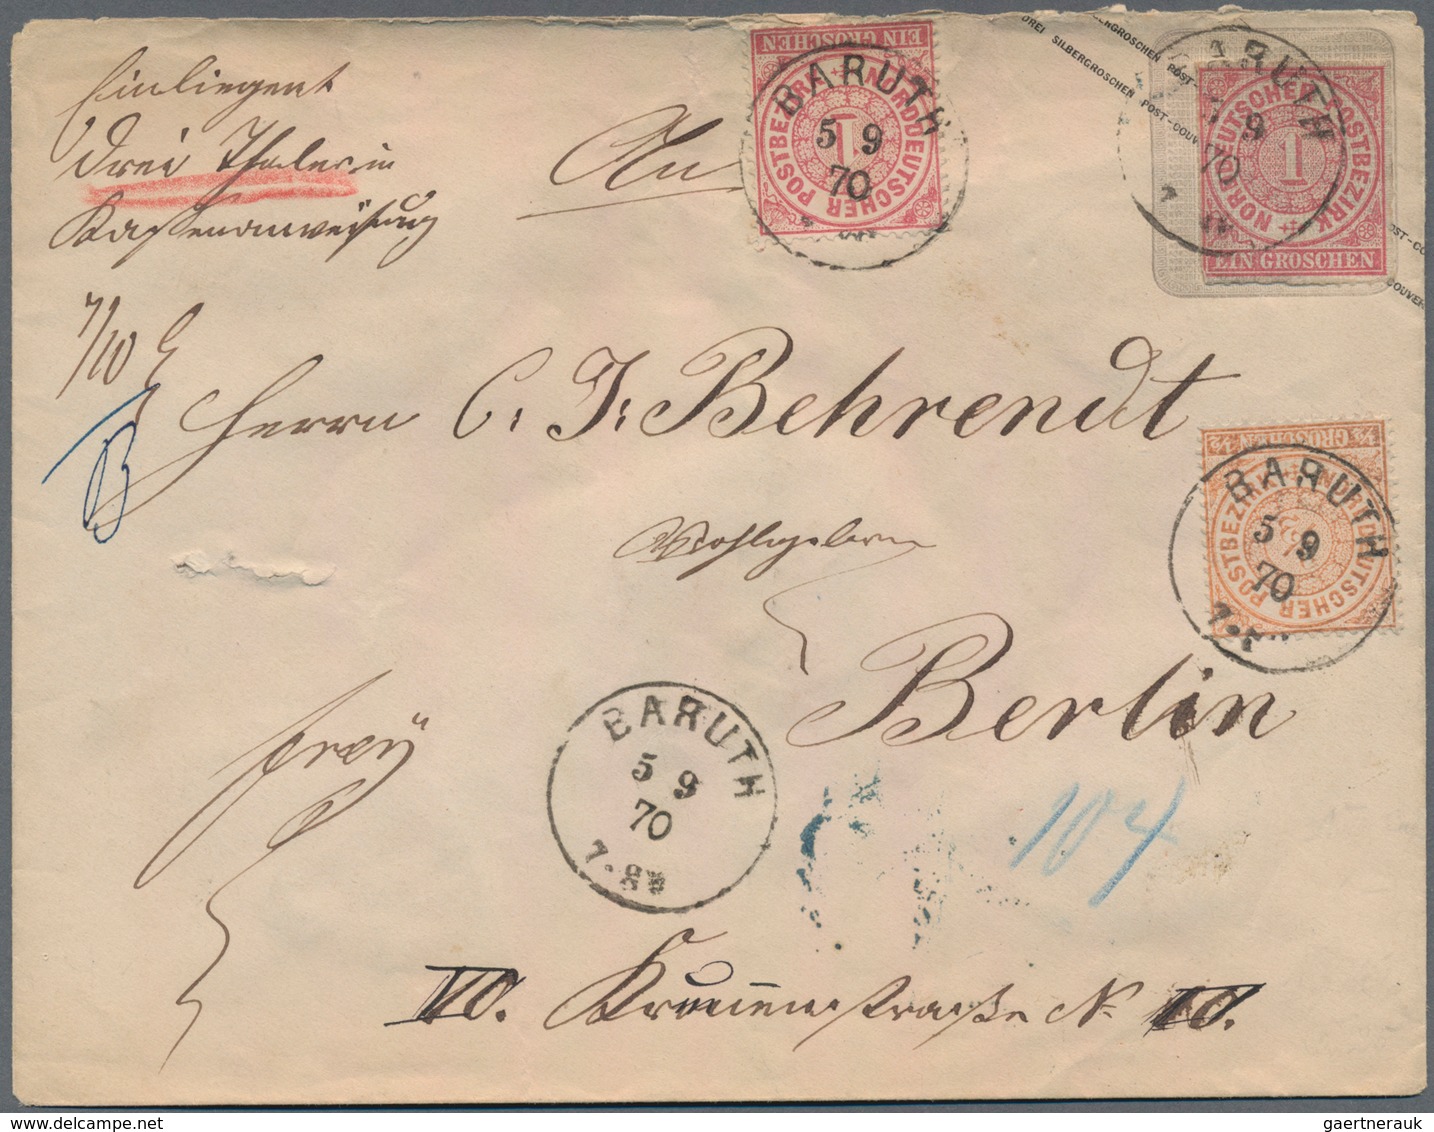 Altdeutschland: 1851/1871, Posten mit ca.55 Belegen, dabei Baden mit Postablagestempeln, Preussen mi